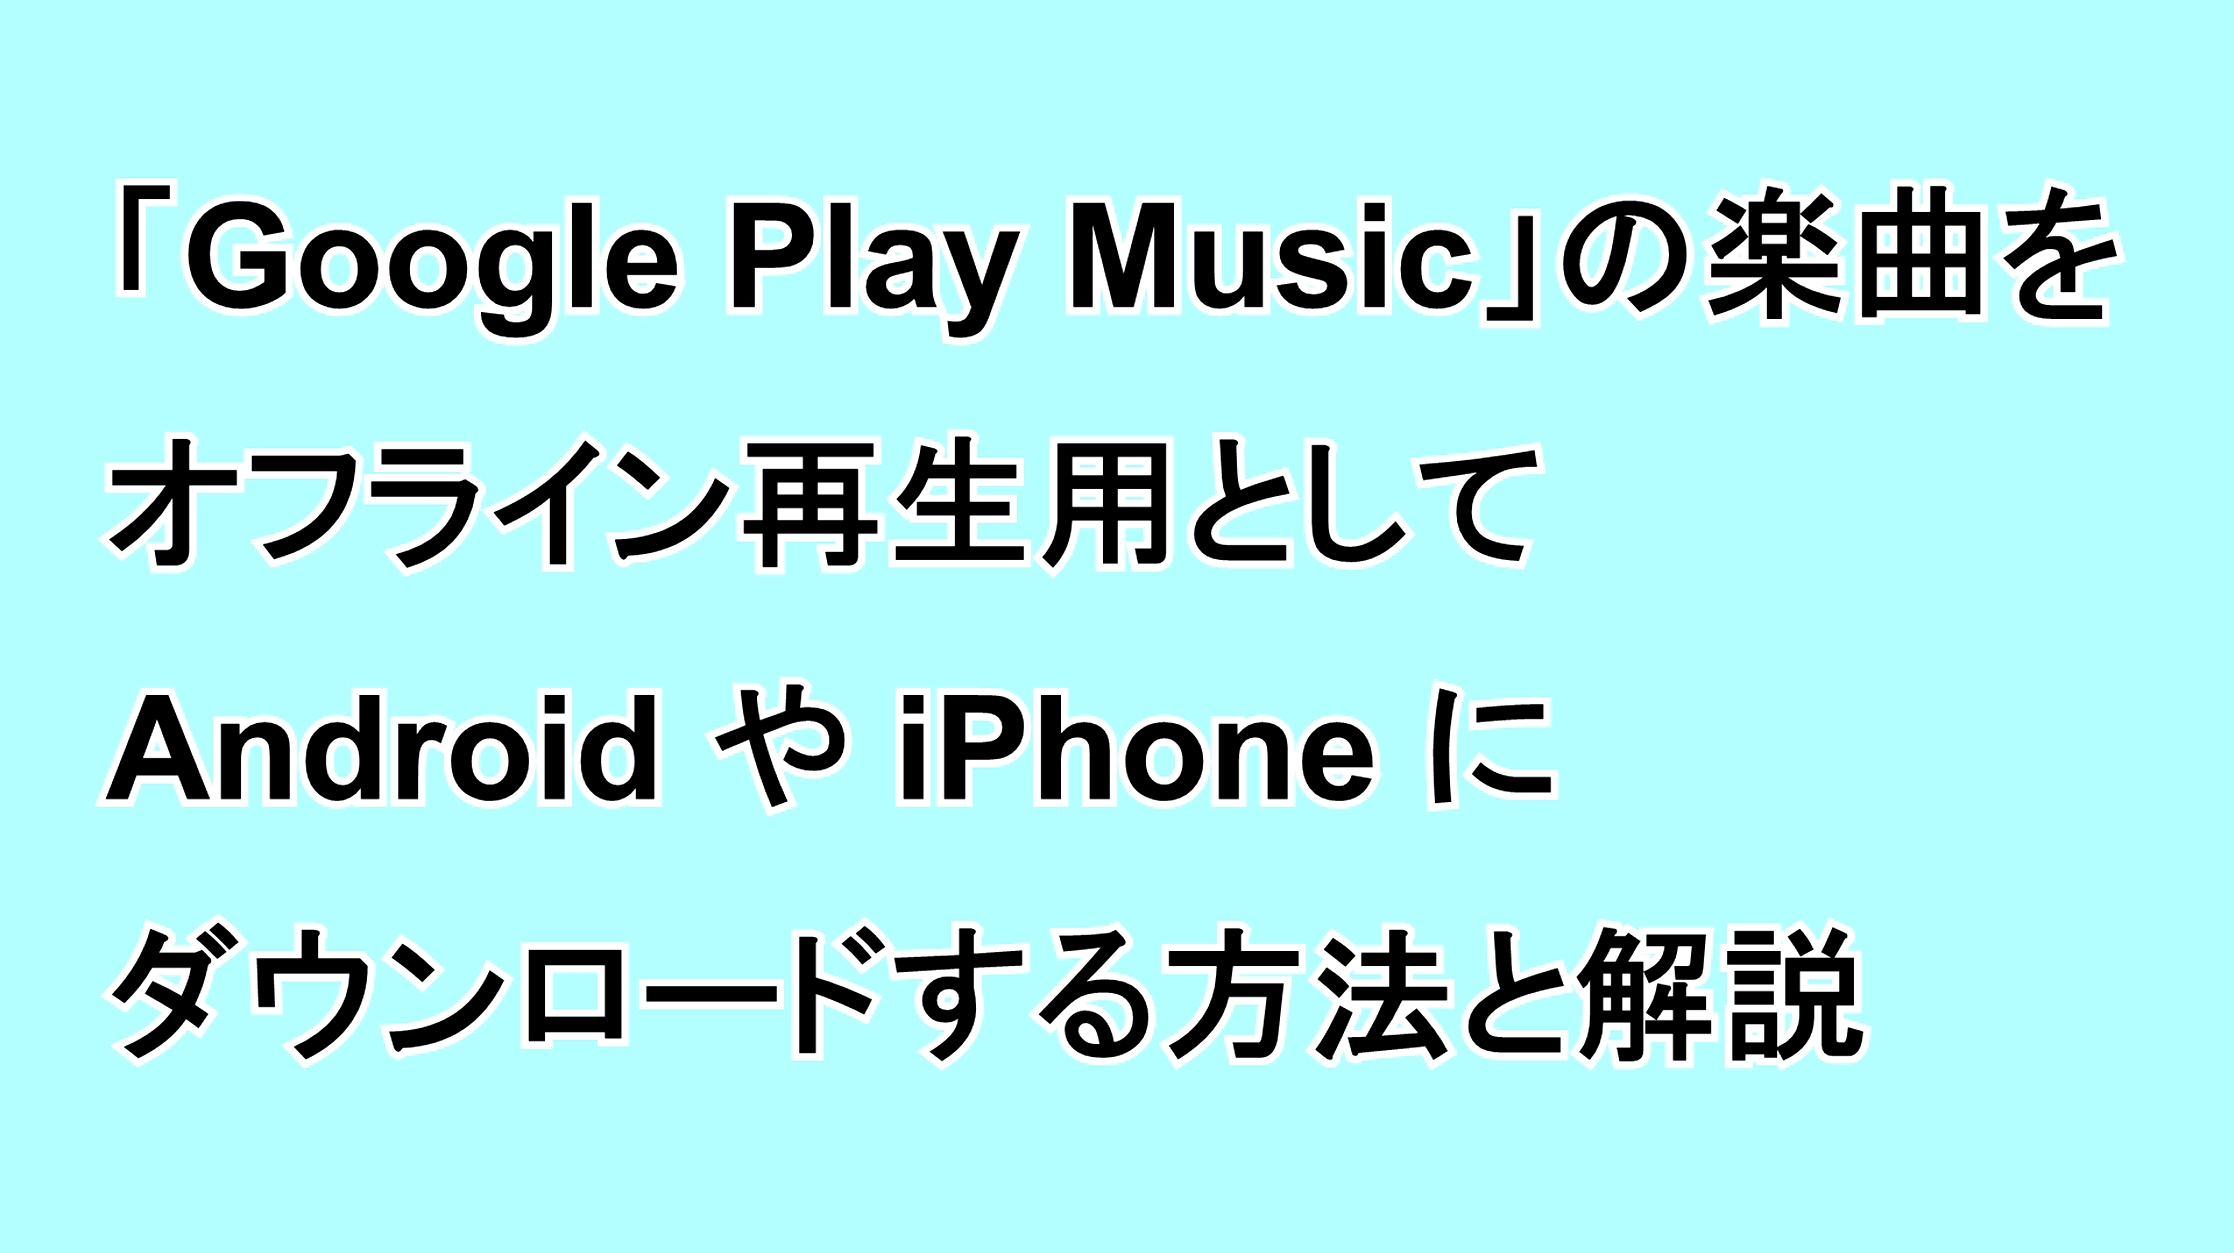 「Google Play Music」の楽曲をオフライン再生用としてAndroidやiPhoneにダウンロードする方法と解説